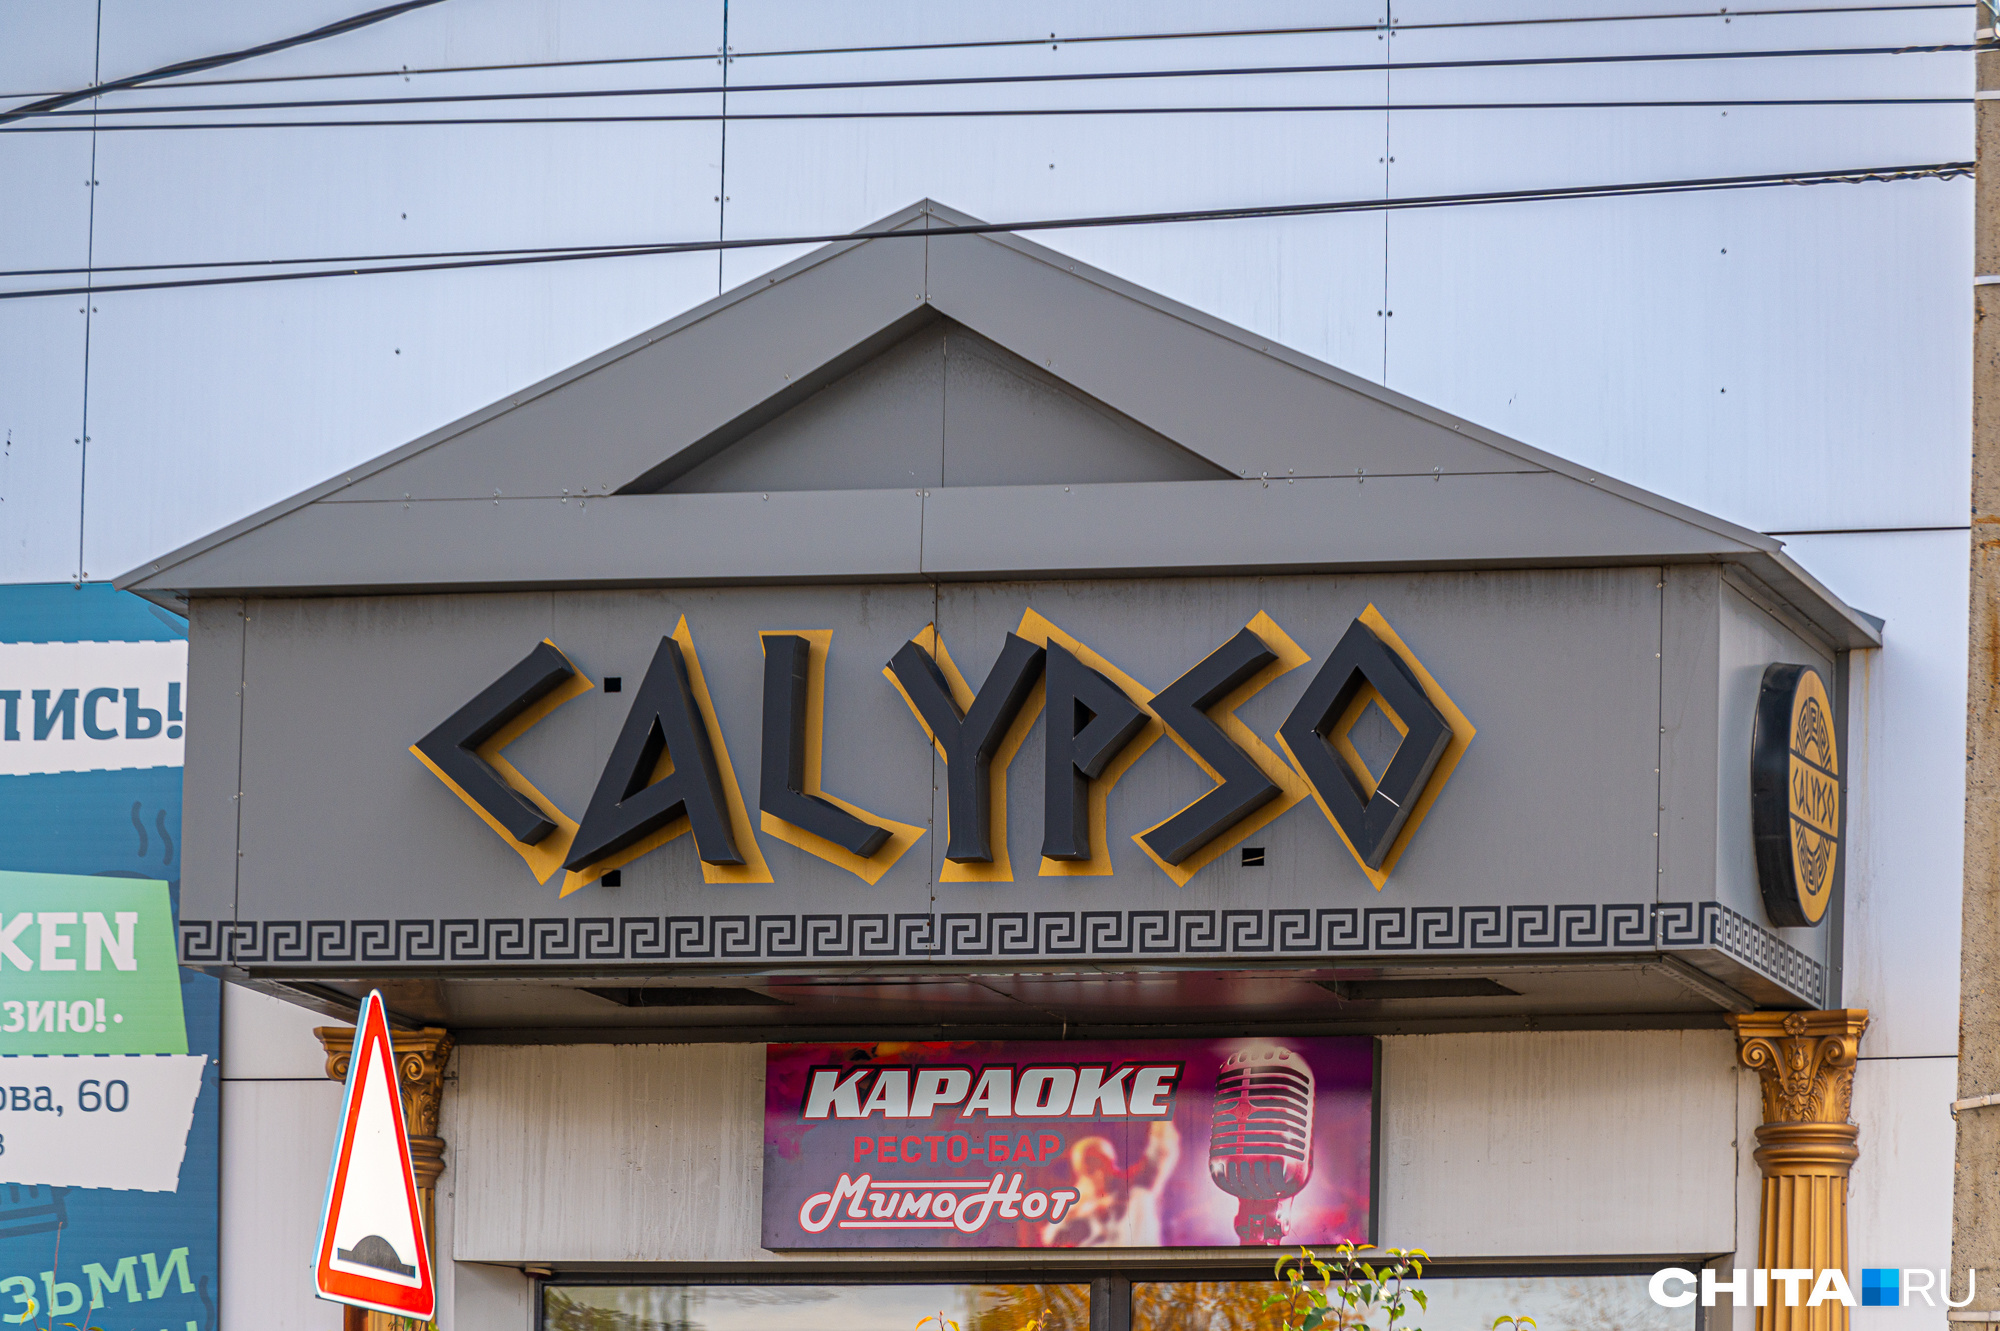     calypso    